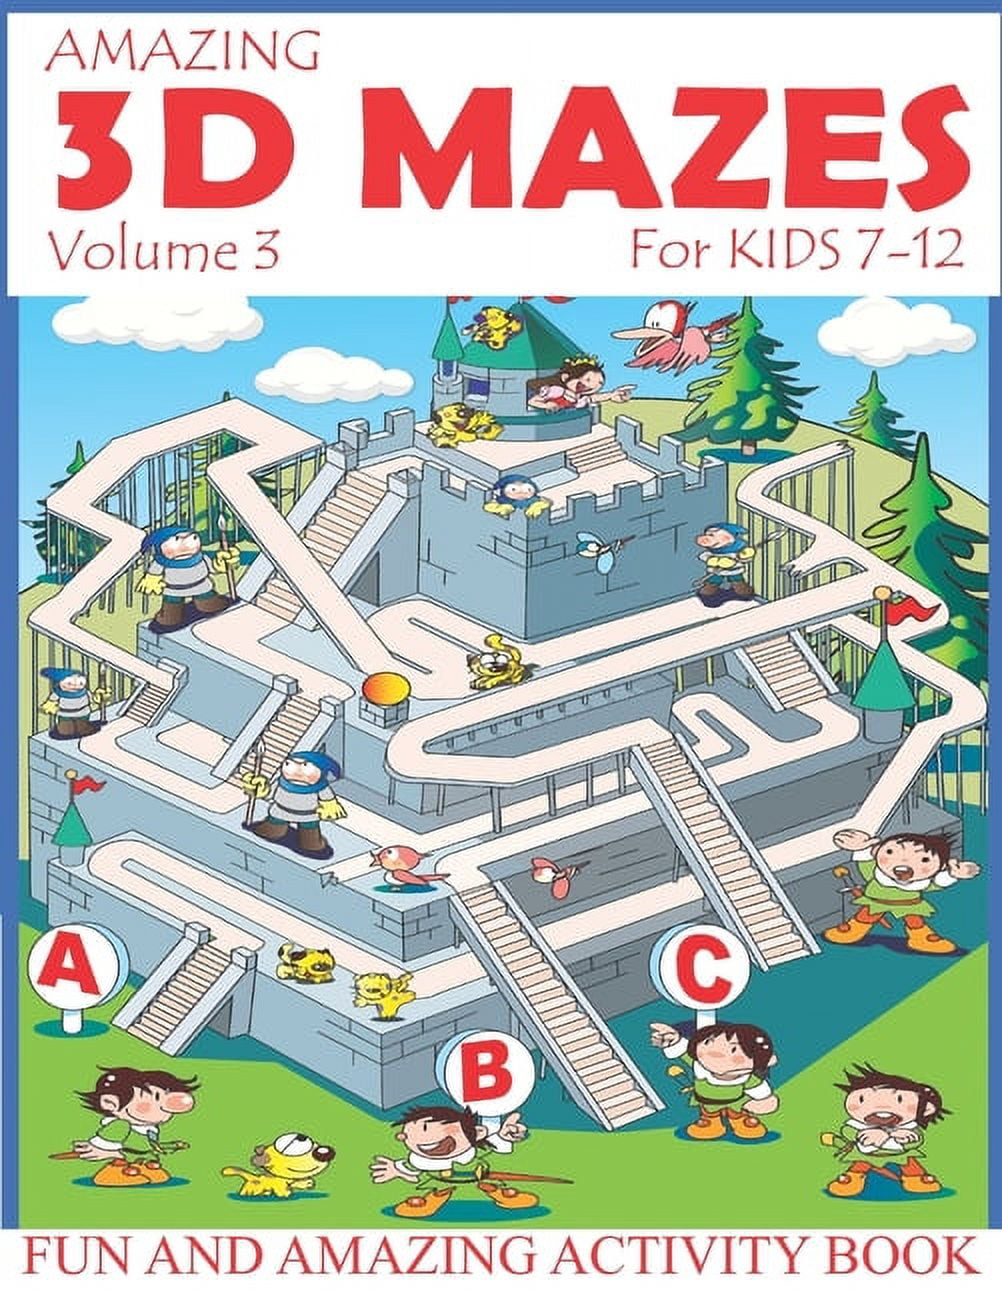 博客來-My Big Maze Book Ages 4-6: Best activity maze books for kids. A perfect  brain game mazes for kids. Awesome activity mazes for your kids to train